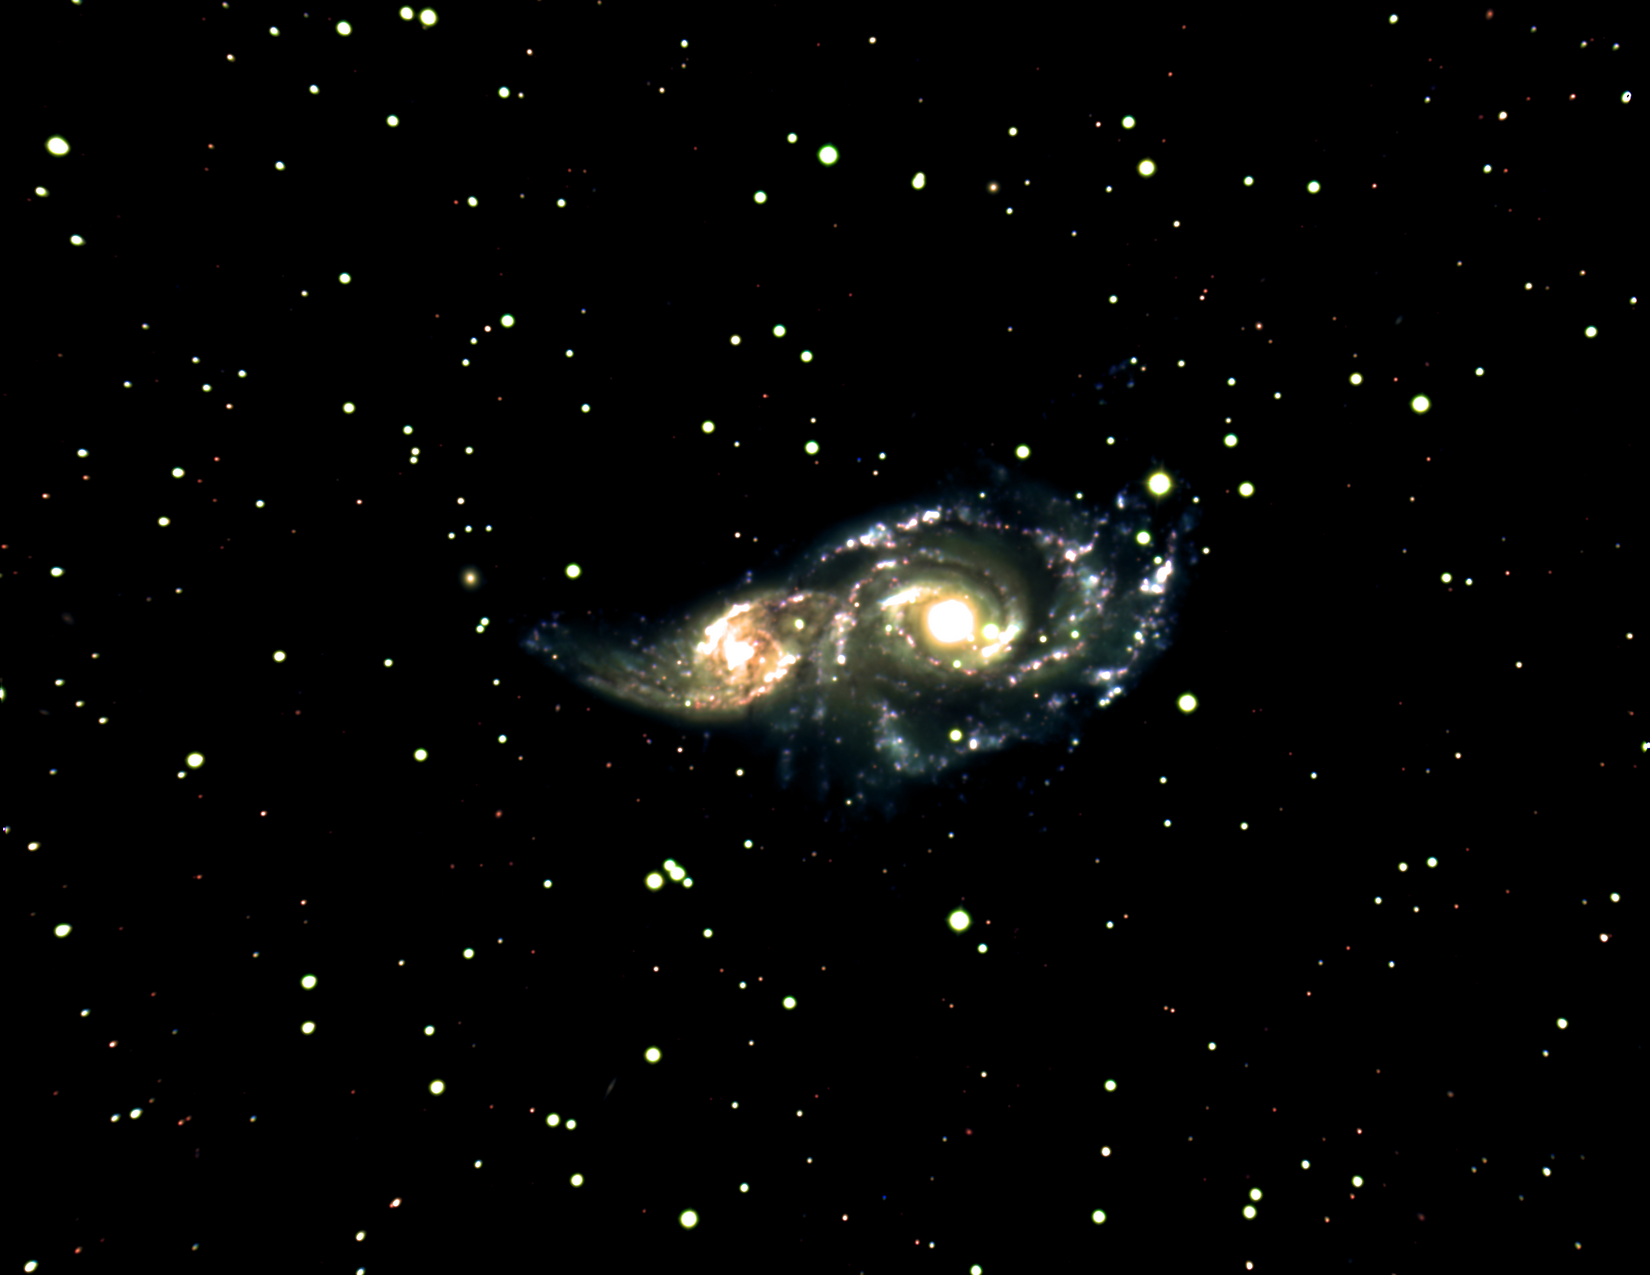 NGC 2207 & IC 2163